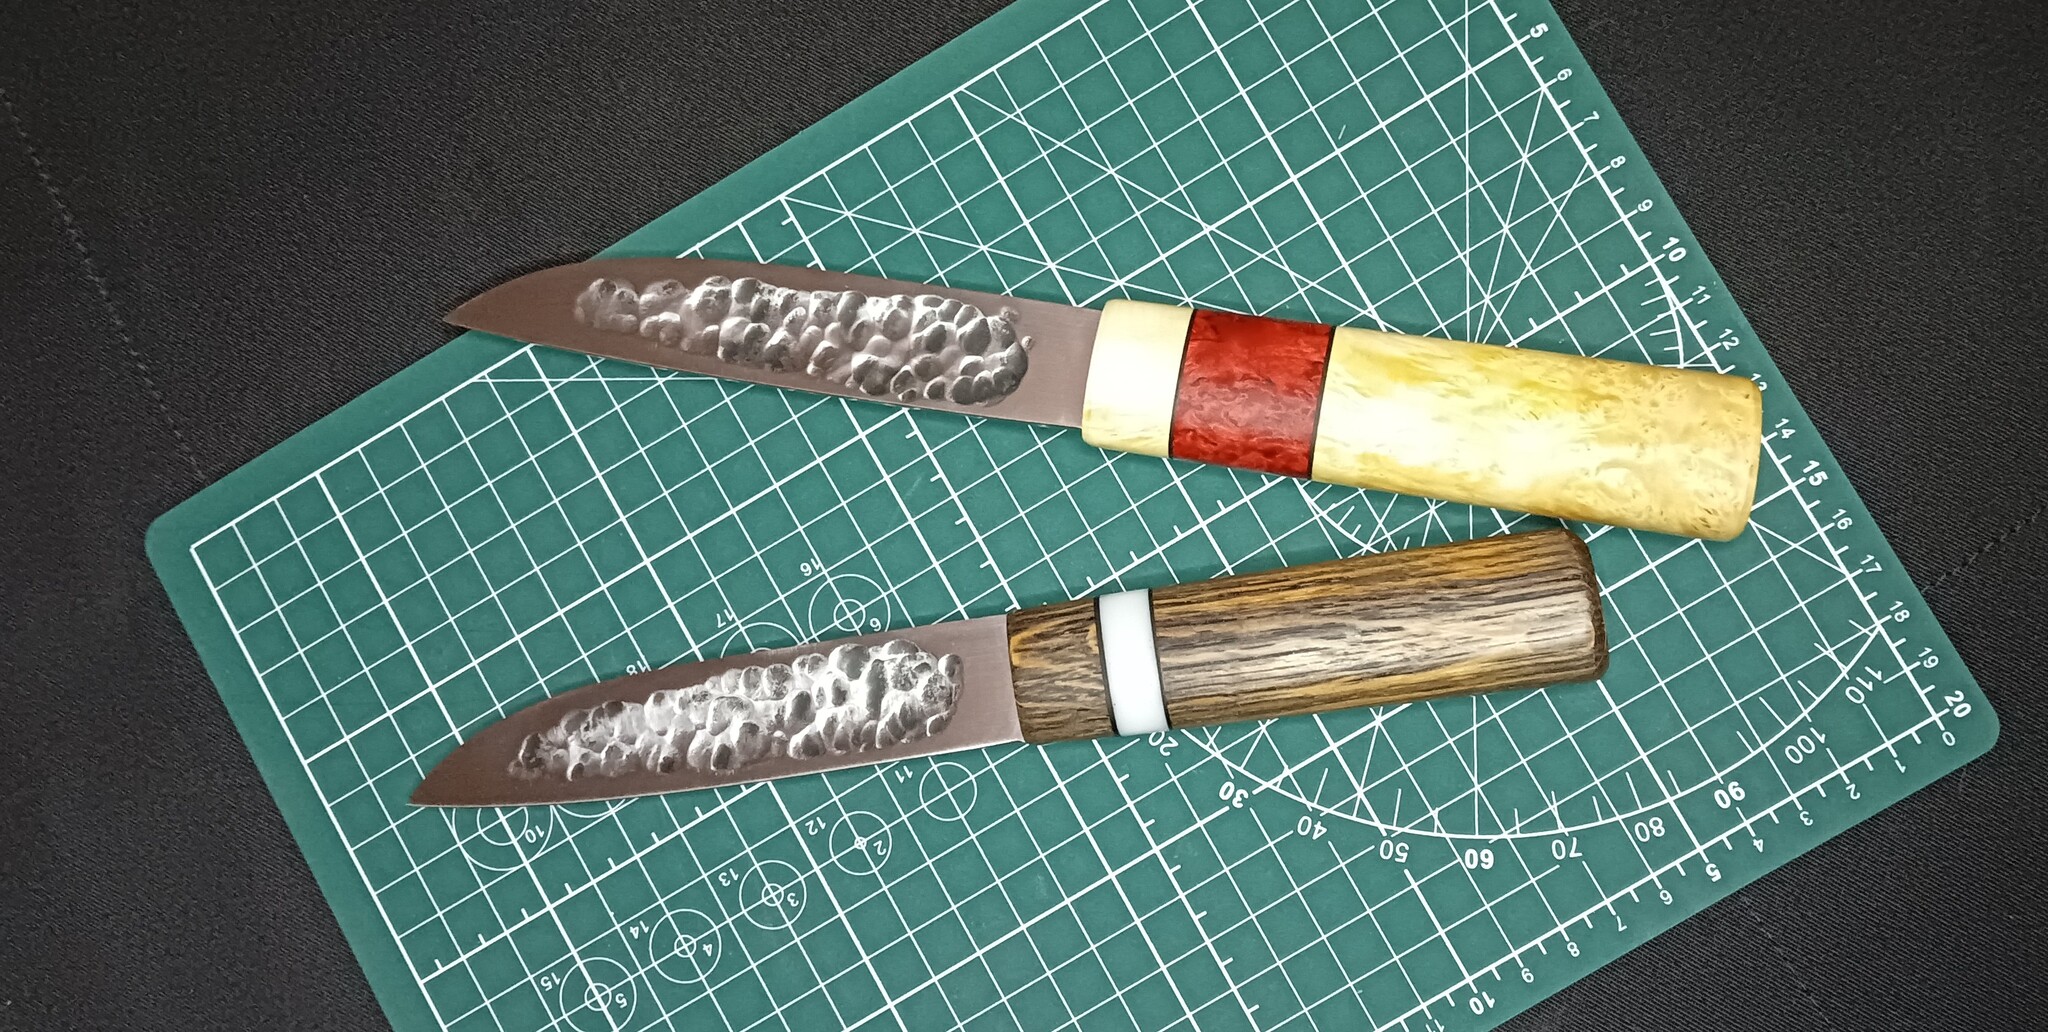 Изготовление ножа своими руками в домашних условиях